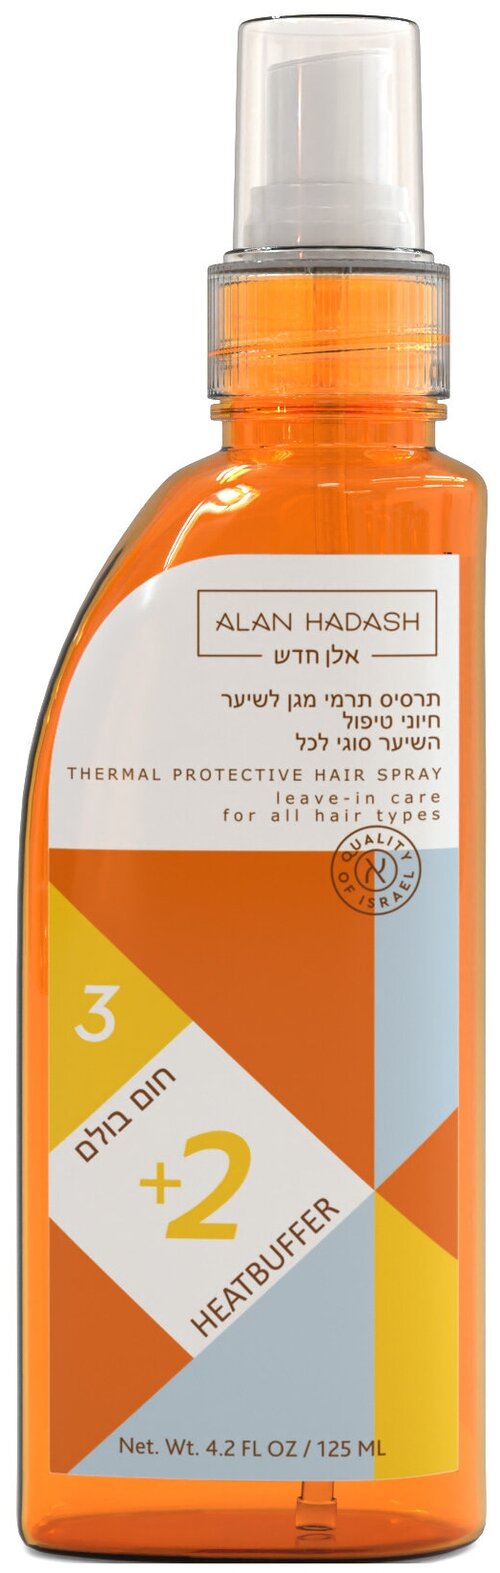 Alan Hadash Термозащитный спрей для типов волос Heatbuffer +2, 125 мл